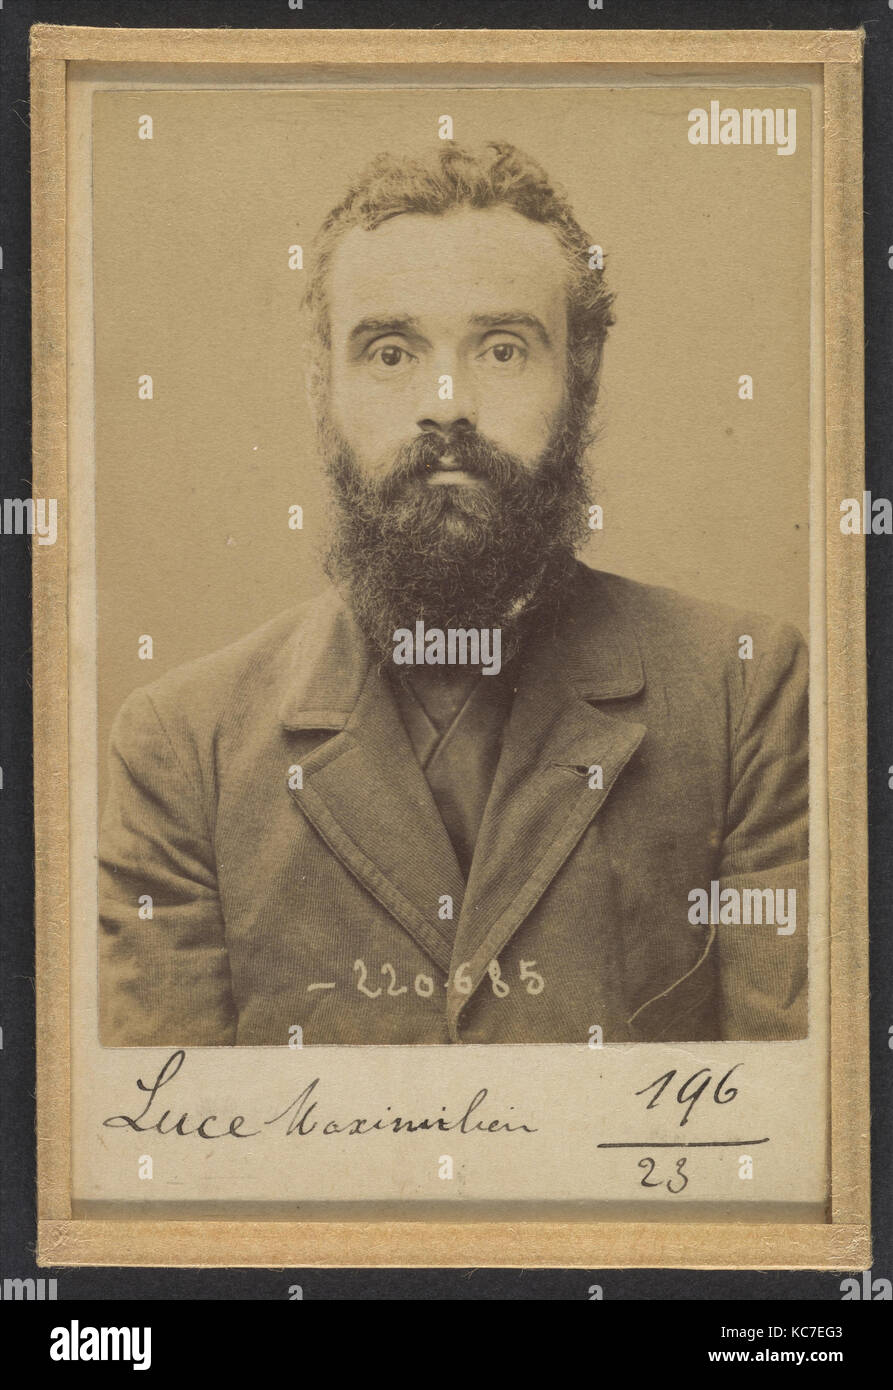 Luce. Maximilien. 36 ans, né le 13/3/58 à Paris VIIe. Artiste-peintre. Anarchiste. 6/7/94., Alphonse Bertillon, 1894 Stock Photo